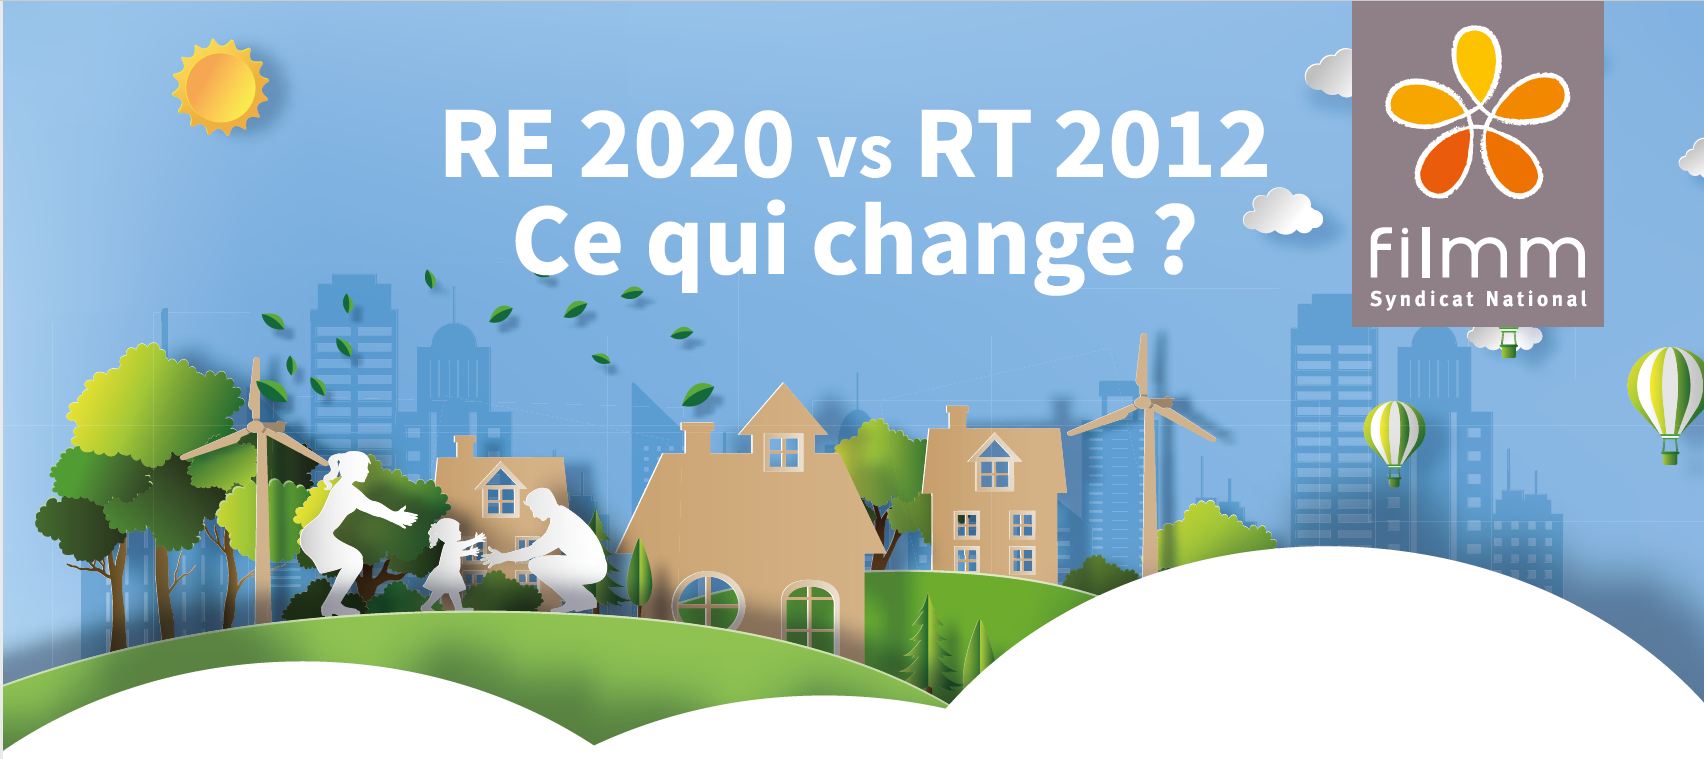 Le FILMM édite une nouvelle brochure : RE 2020 vs RT 2012, ce qui change ?